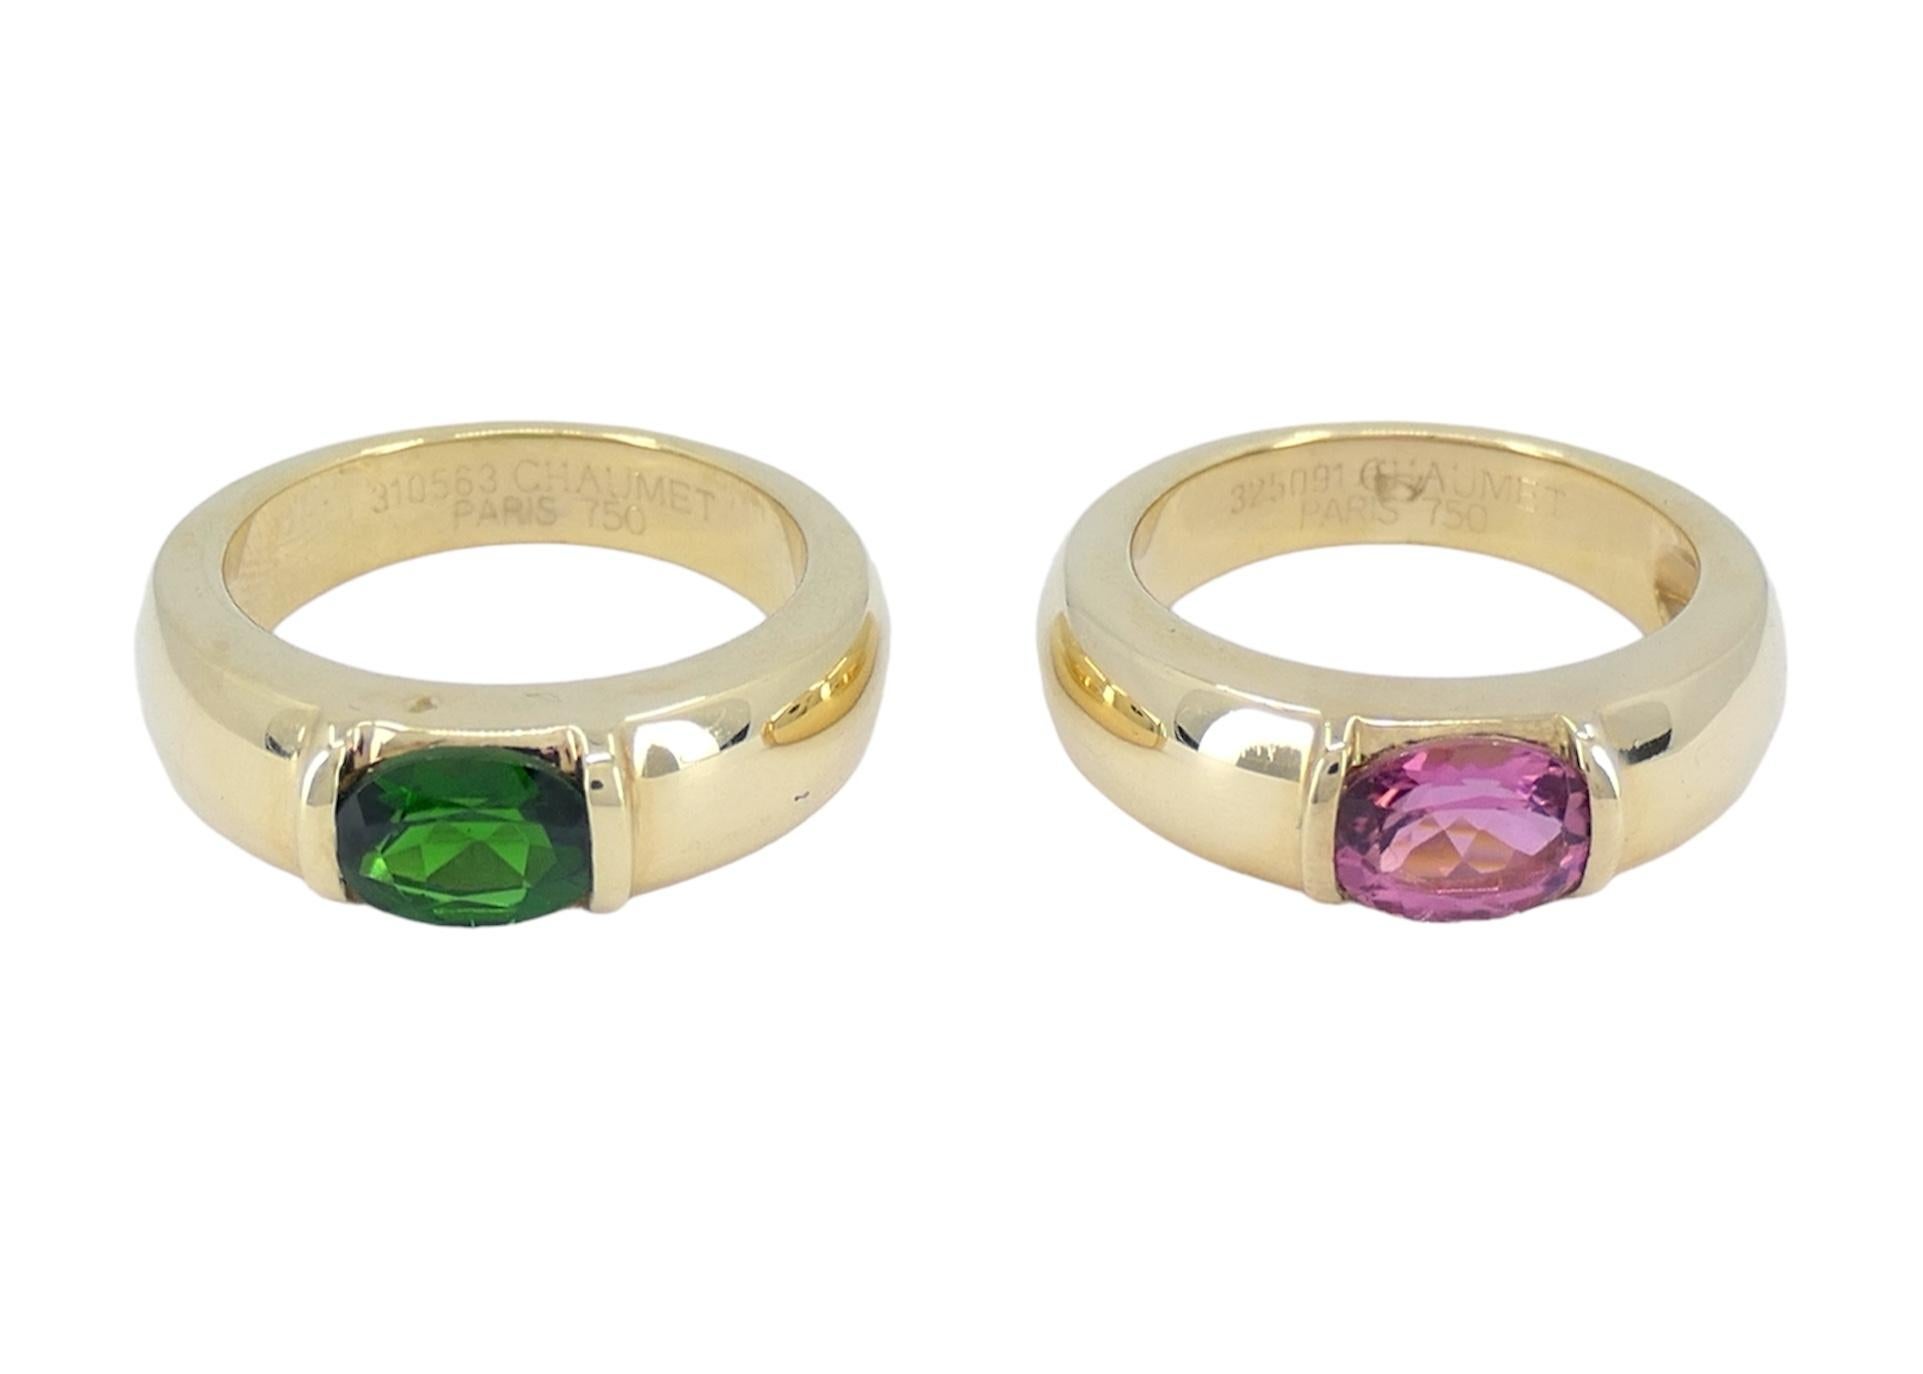 Ein Paar Chaumet Paris Rosa und Grün Troumaline 18k Gold Ringe.
Der Ring mit grünem Turmalin hat die Größe 7,5, wiegt 10,3 Gramm und ist mit 310563 Chaumet Paris 750 signiert.
Der rosafarbene Turmalinring hat die Größe 7, wiegt 9,8 Gramm und ist mit